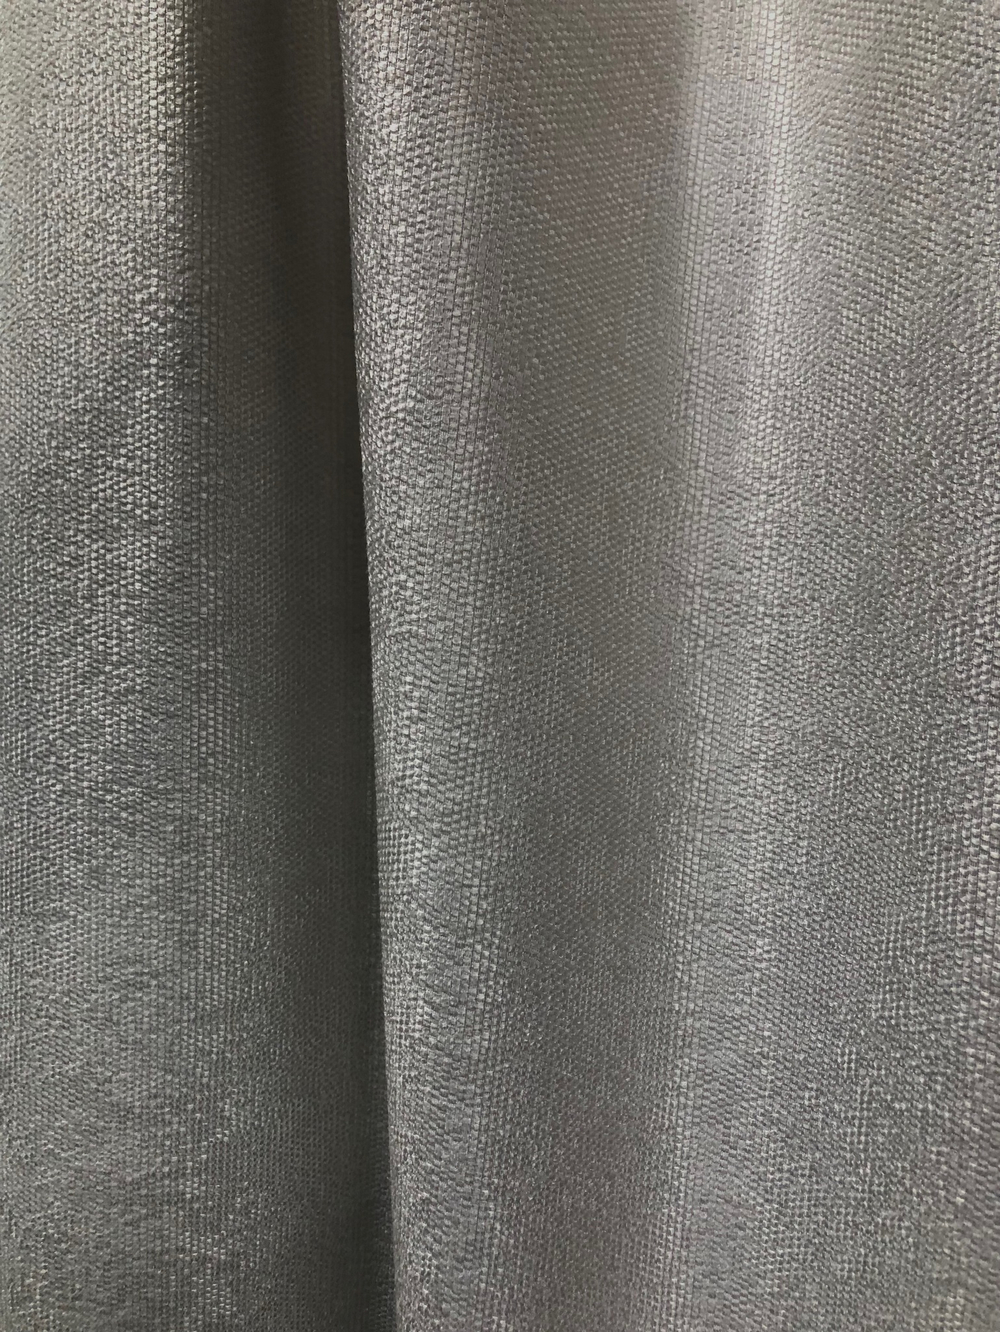 Ткань портьерная Рогожка, цвет светло серый, стальной, артикул 327749